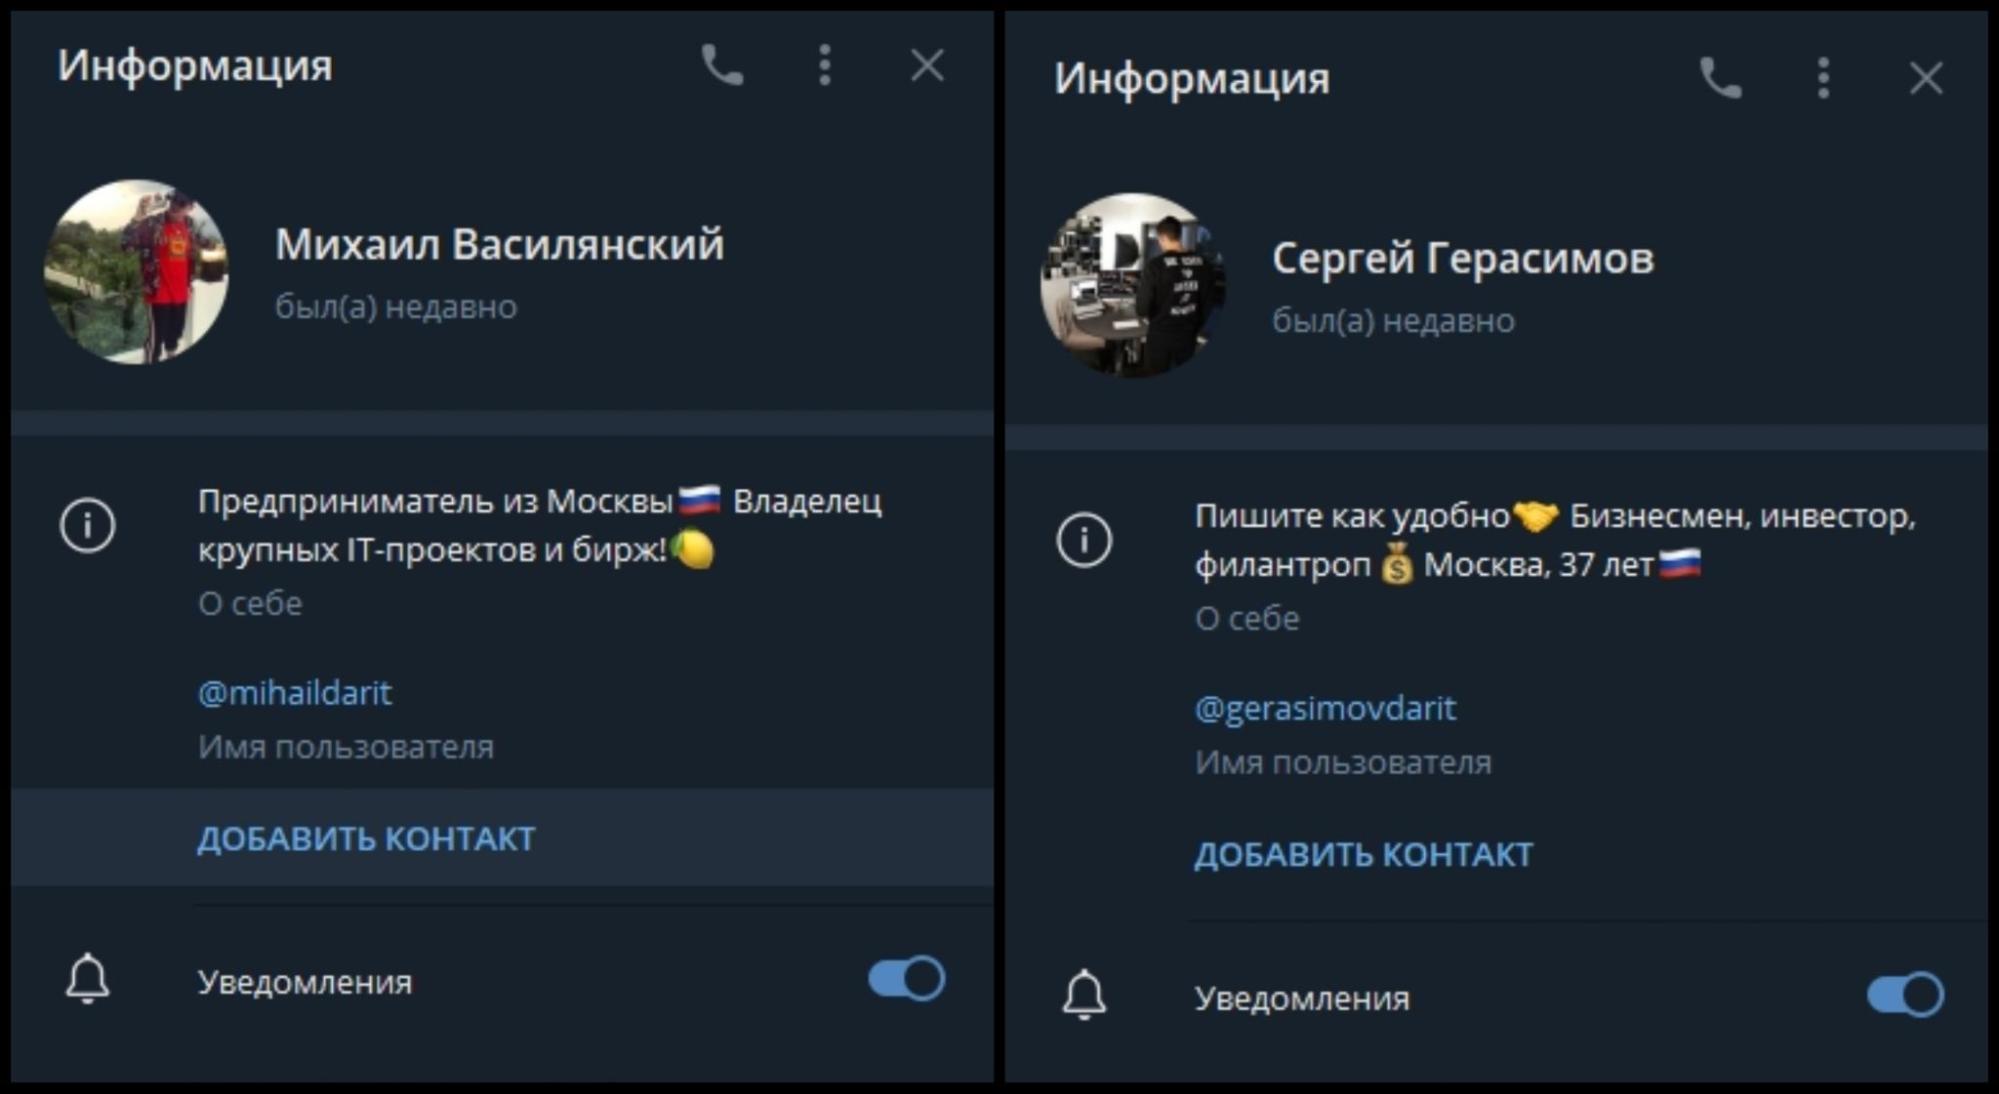 Информация о каналах Михаила Василянскогоф